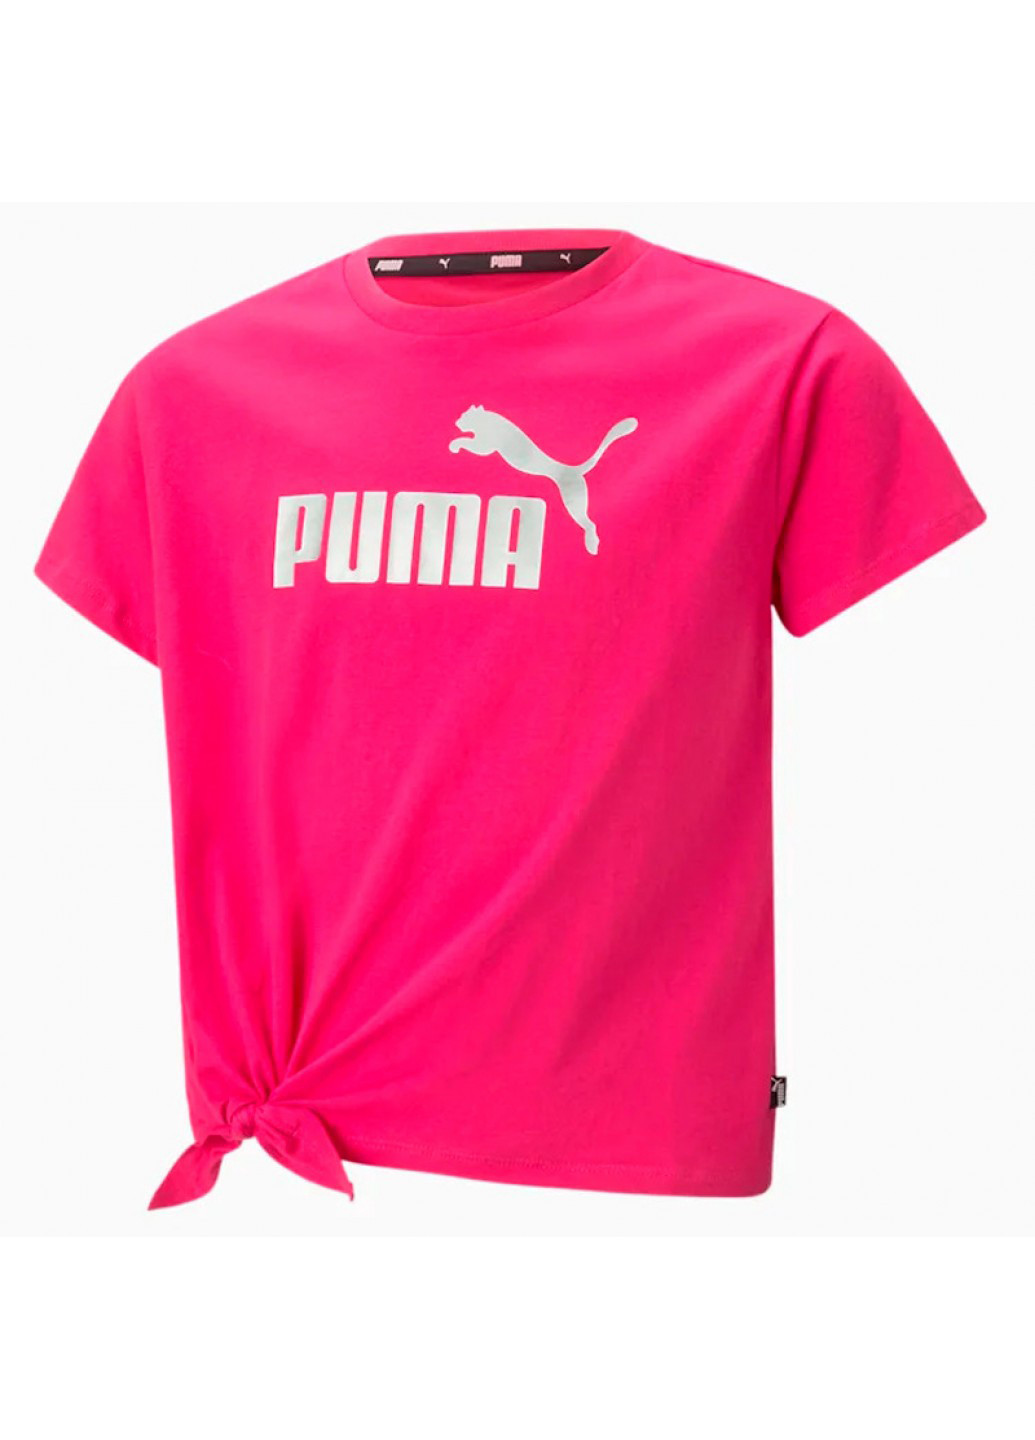 Малиновая летняя футболка Puma 846956-64